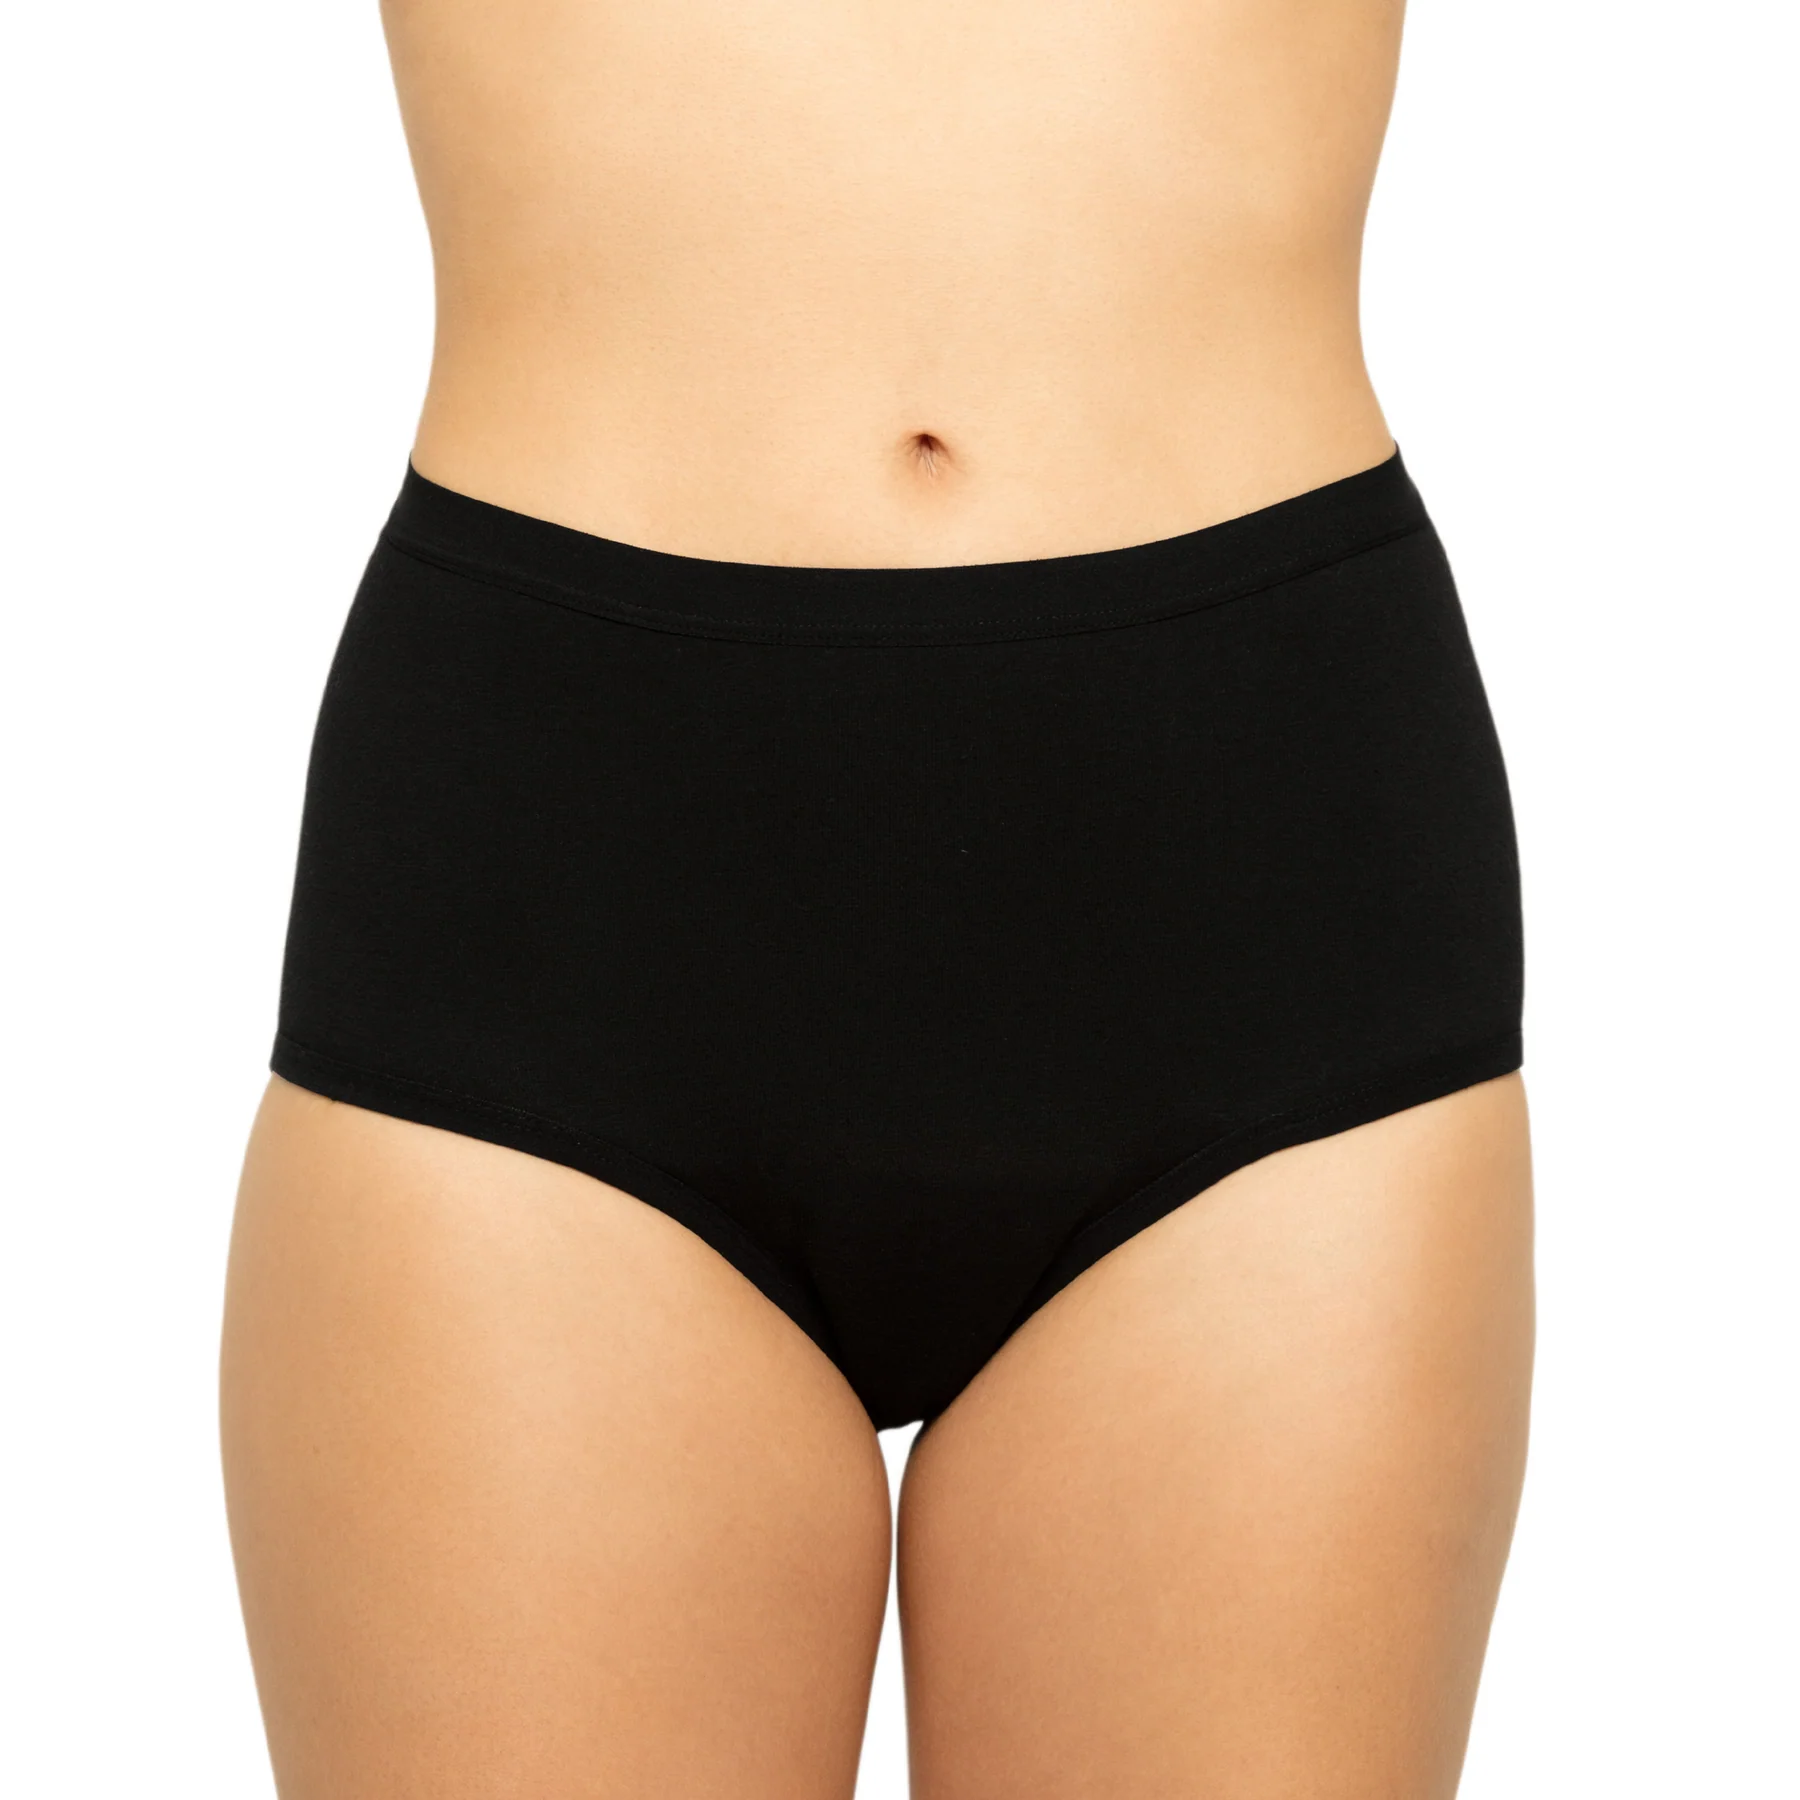 Plus Size Ladies White Black Skin Control brief hold in underwear